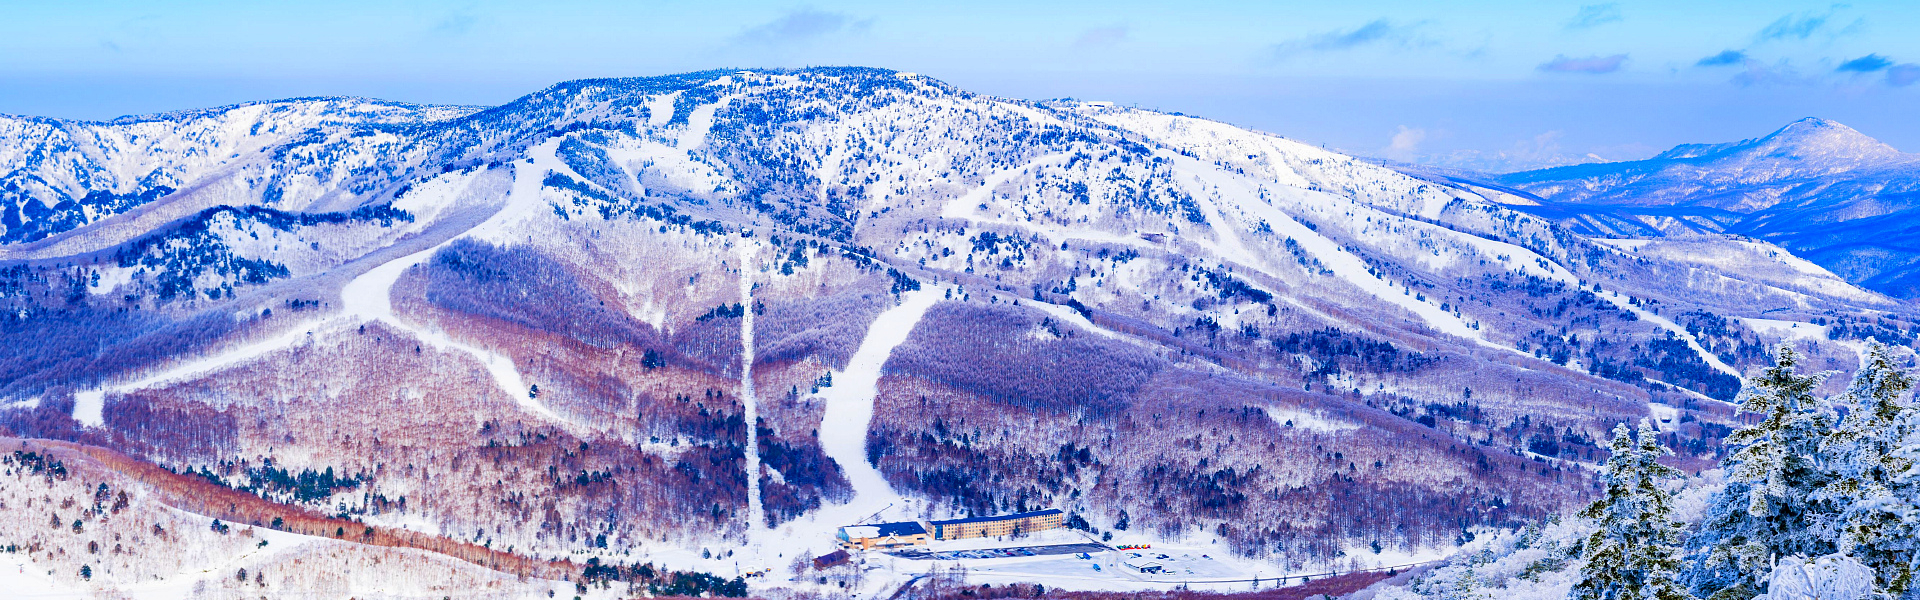 Yakibitaiyama Ski Resort